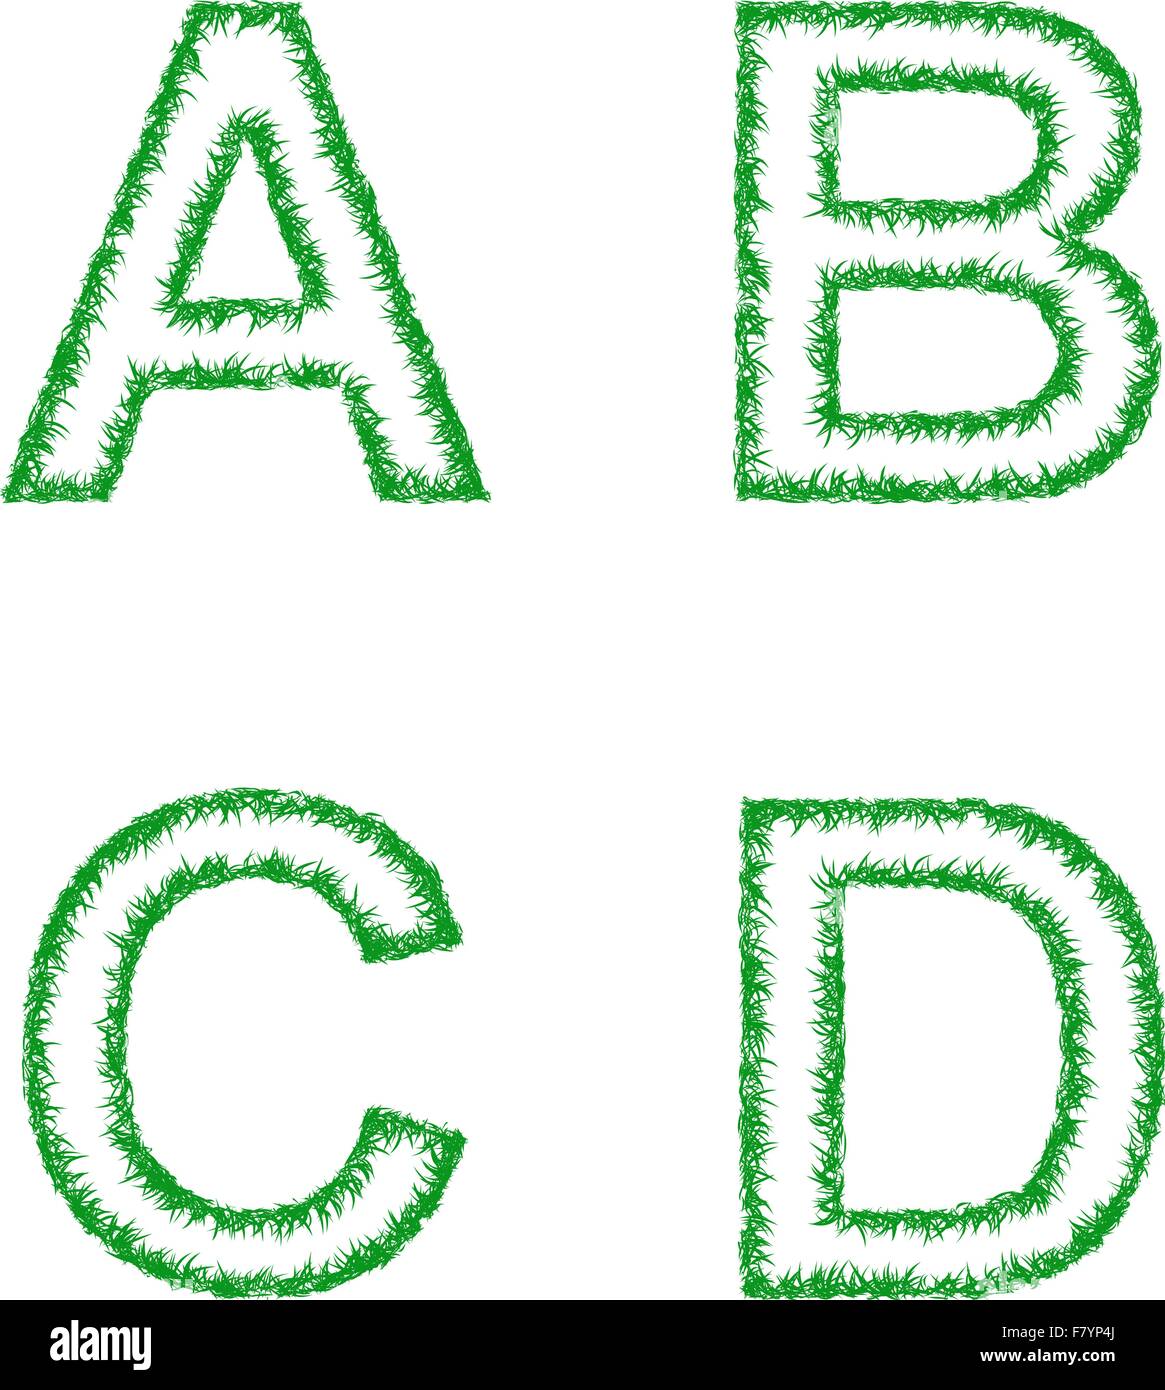 La pasto verde de la fuente - letras A, B, C, D Ilustración del Vector